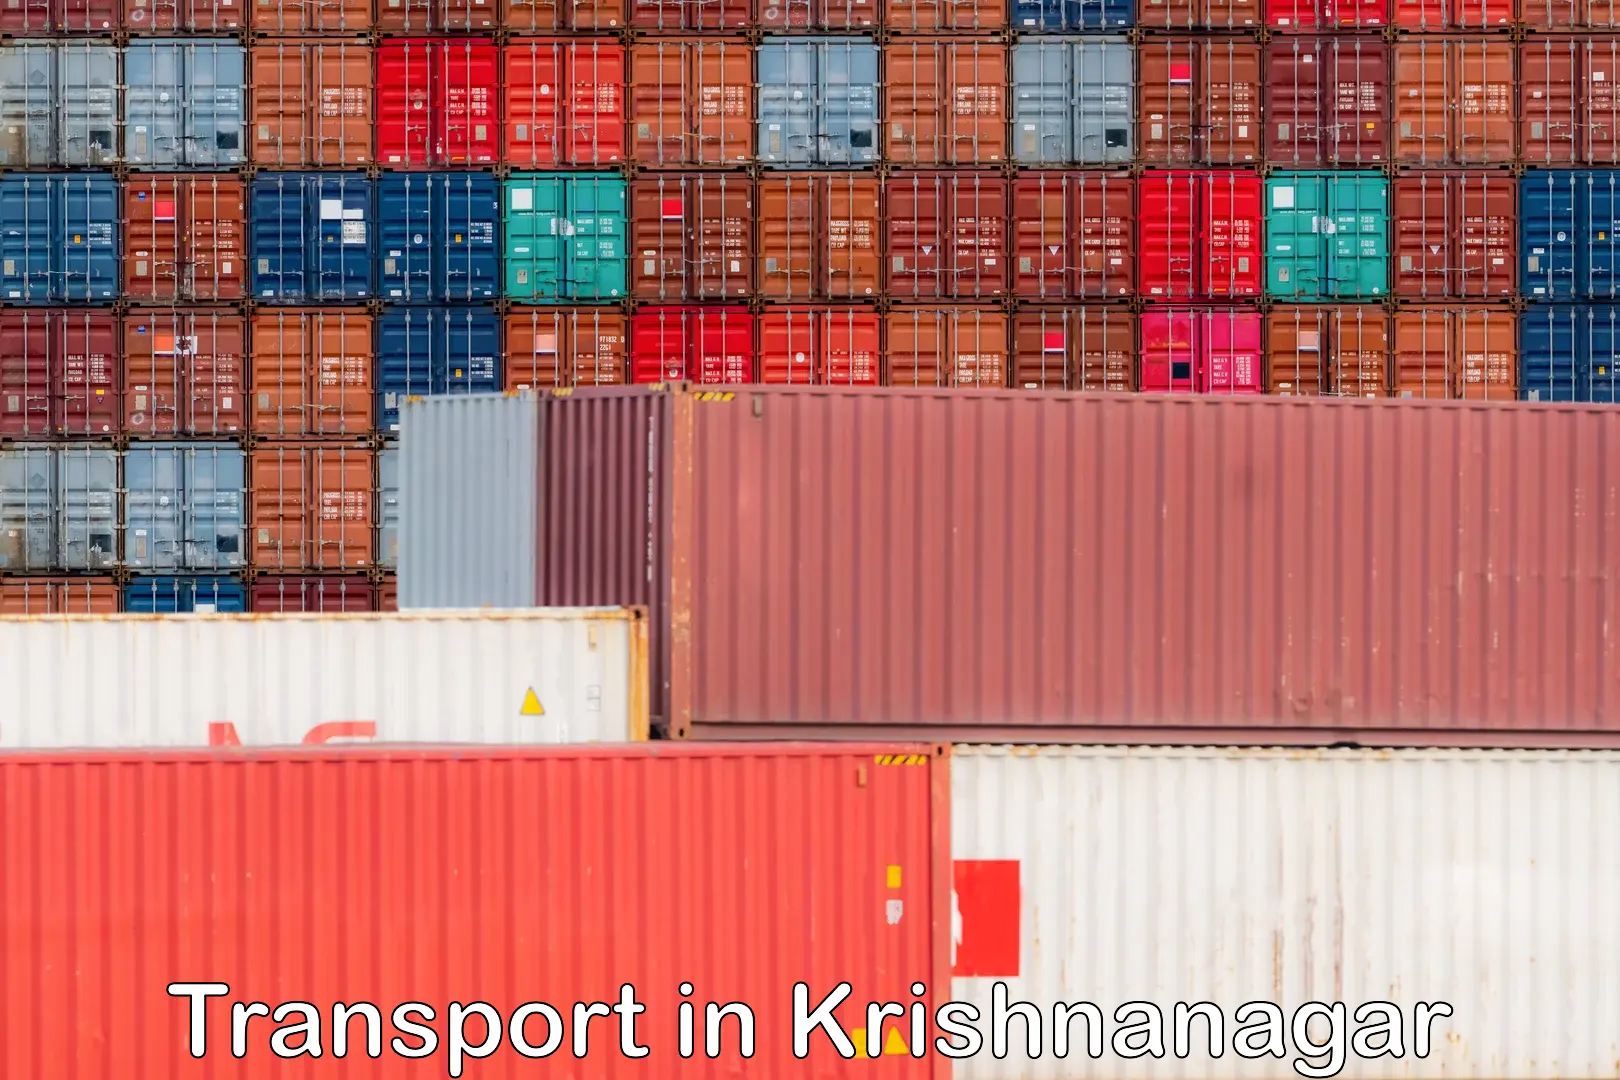 International cargo transportation services in Krishnanagar